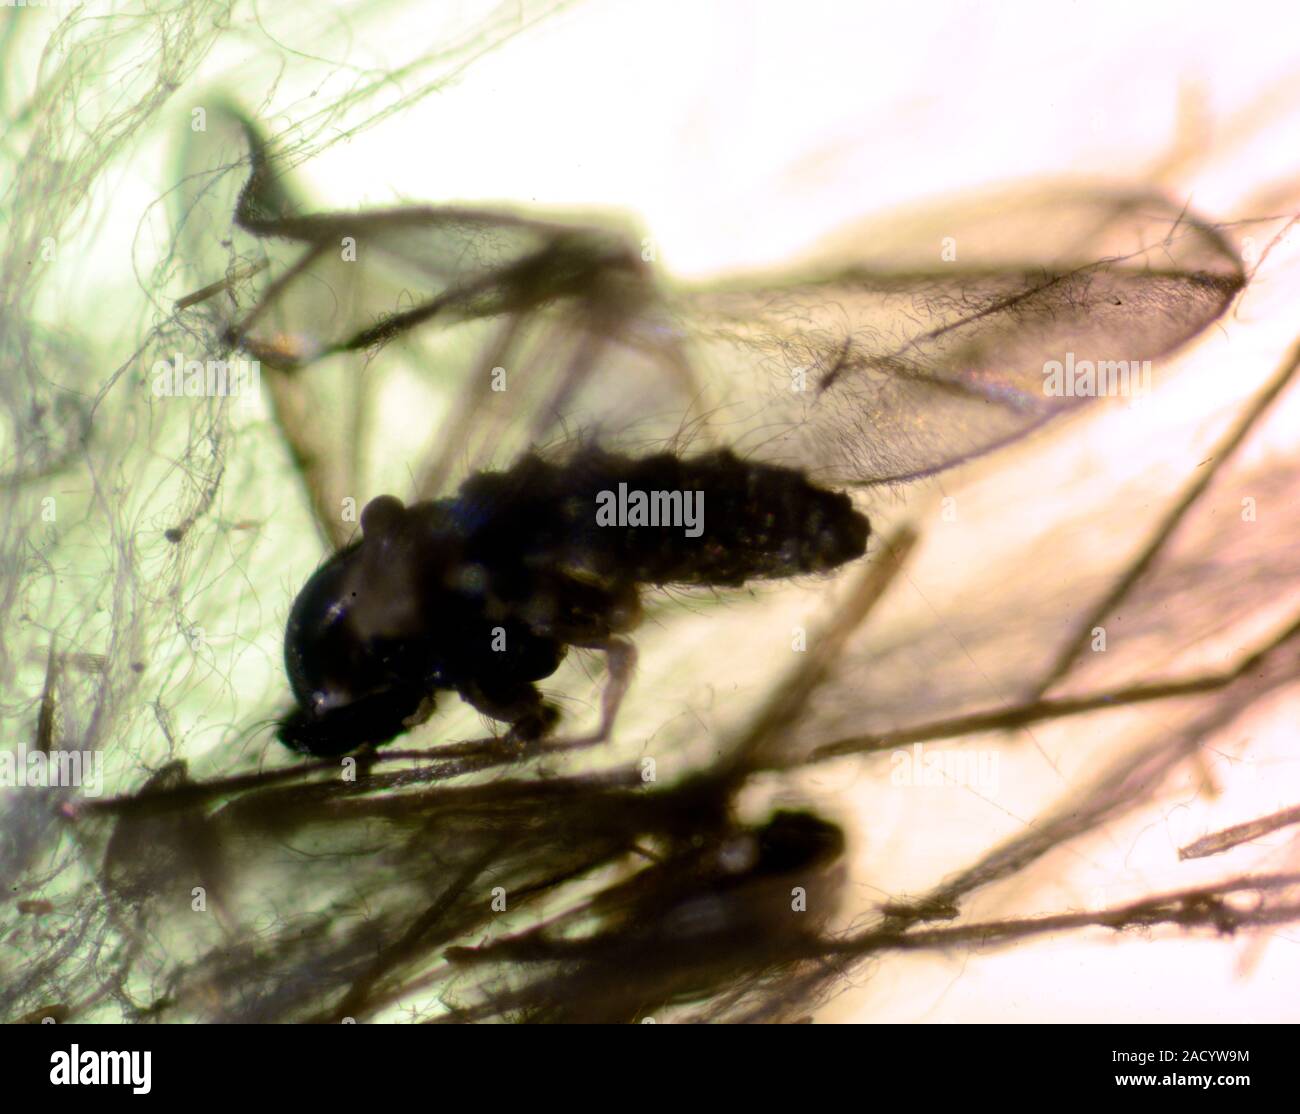 Drosophila melanogaster, la mosca de la fruta común, la mosca del vinagre, mosca, -en una tela de araña. Foto de stock